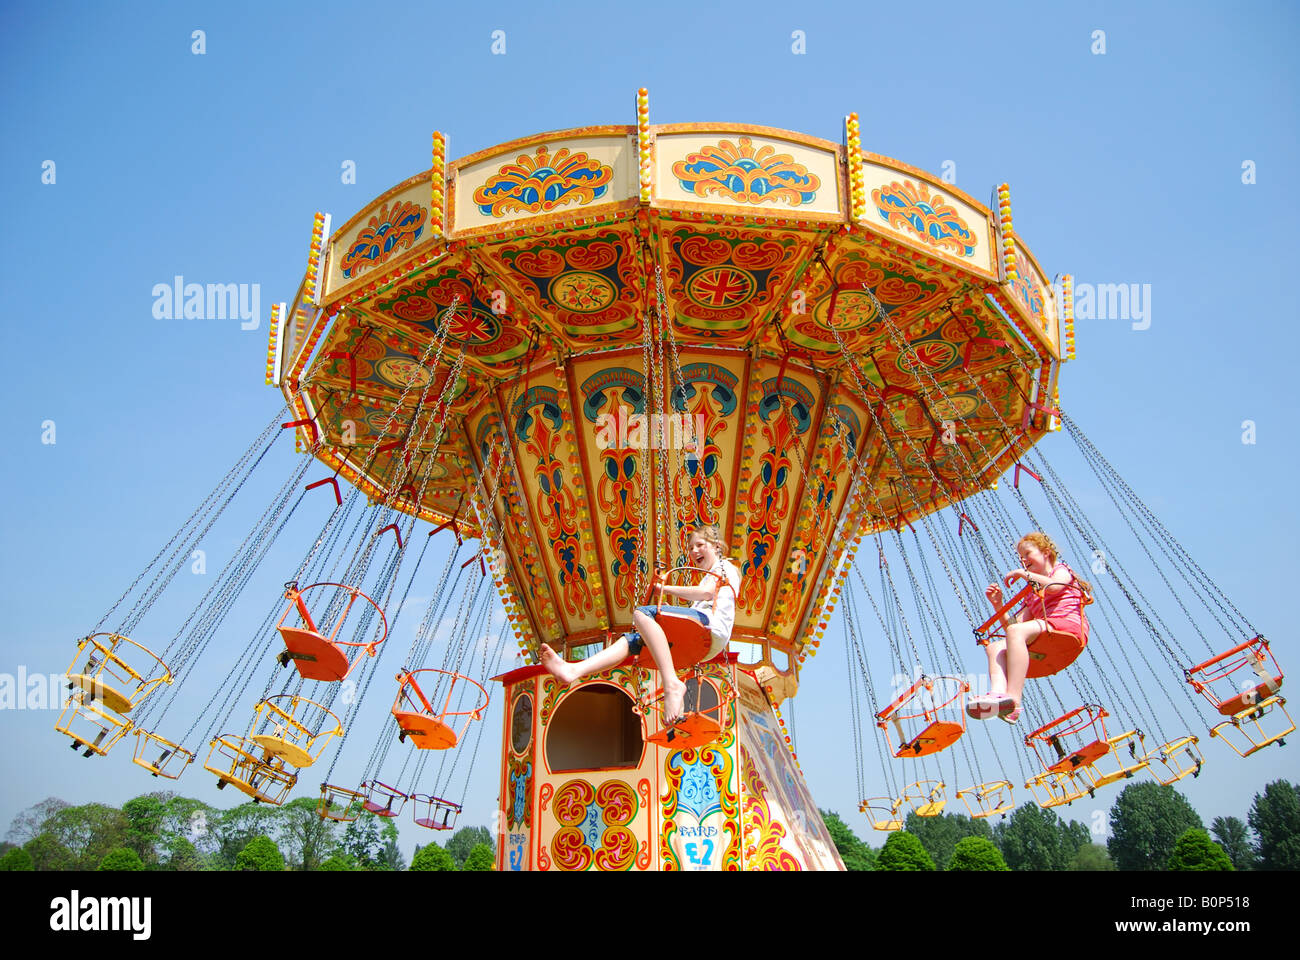 Sedia swing Fairground Ride presso il Royal Windsor Horse Show, Home Park, Windsor, Berkshire, Inghilterra, Regno Unito Foto Stock